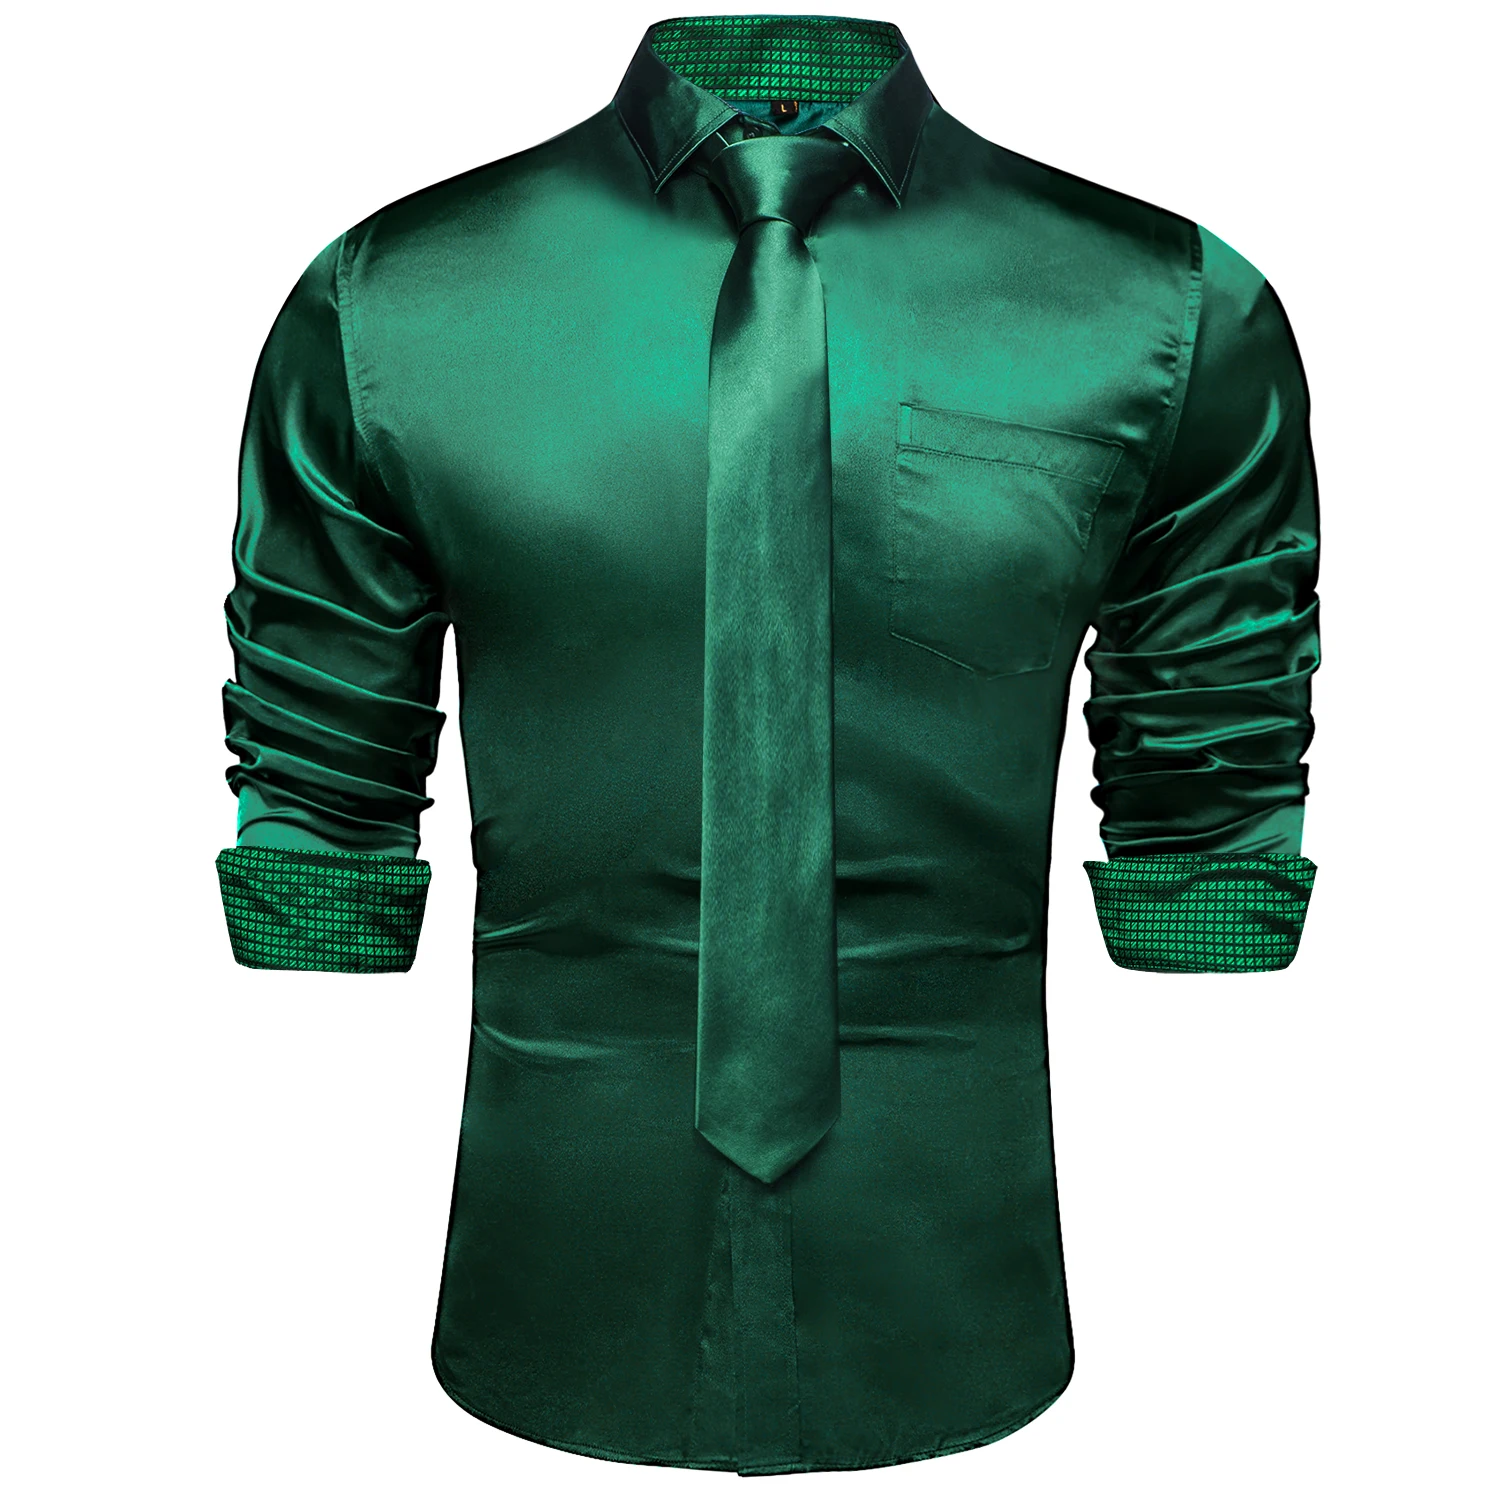 Tanie Zielony w kratę łączenie kontrastujące kolory koszule z długim rękawem dla mężczyzn sklep